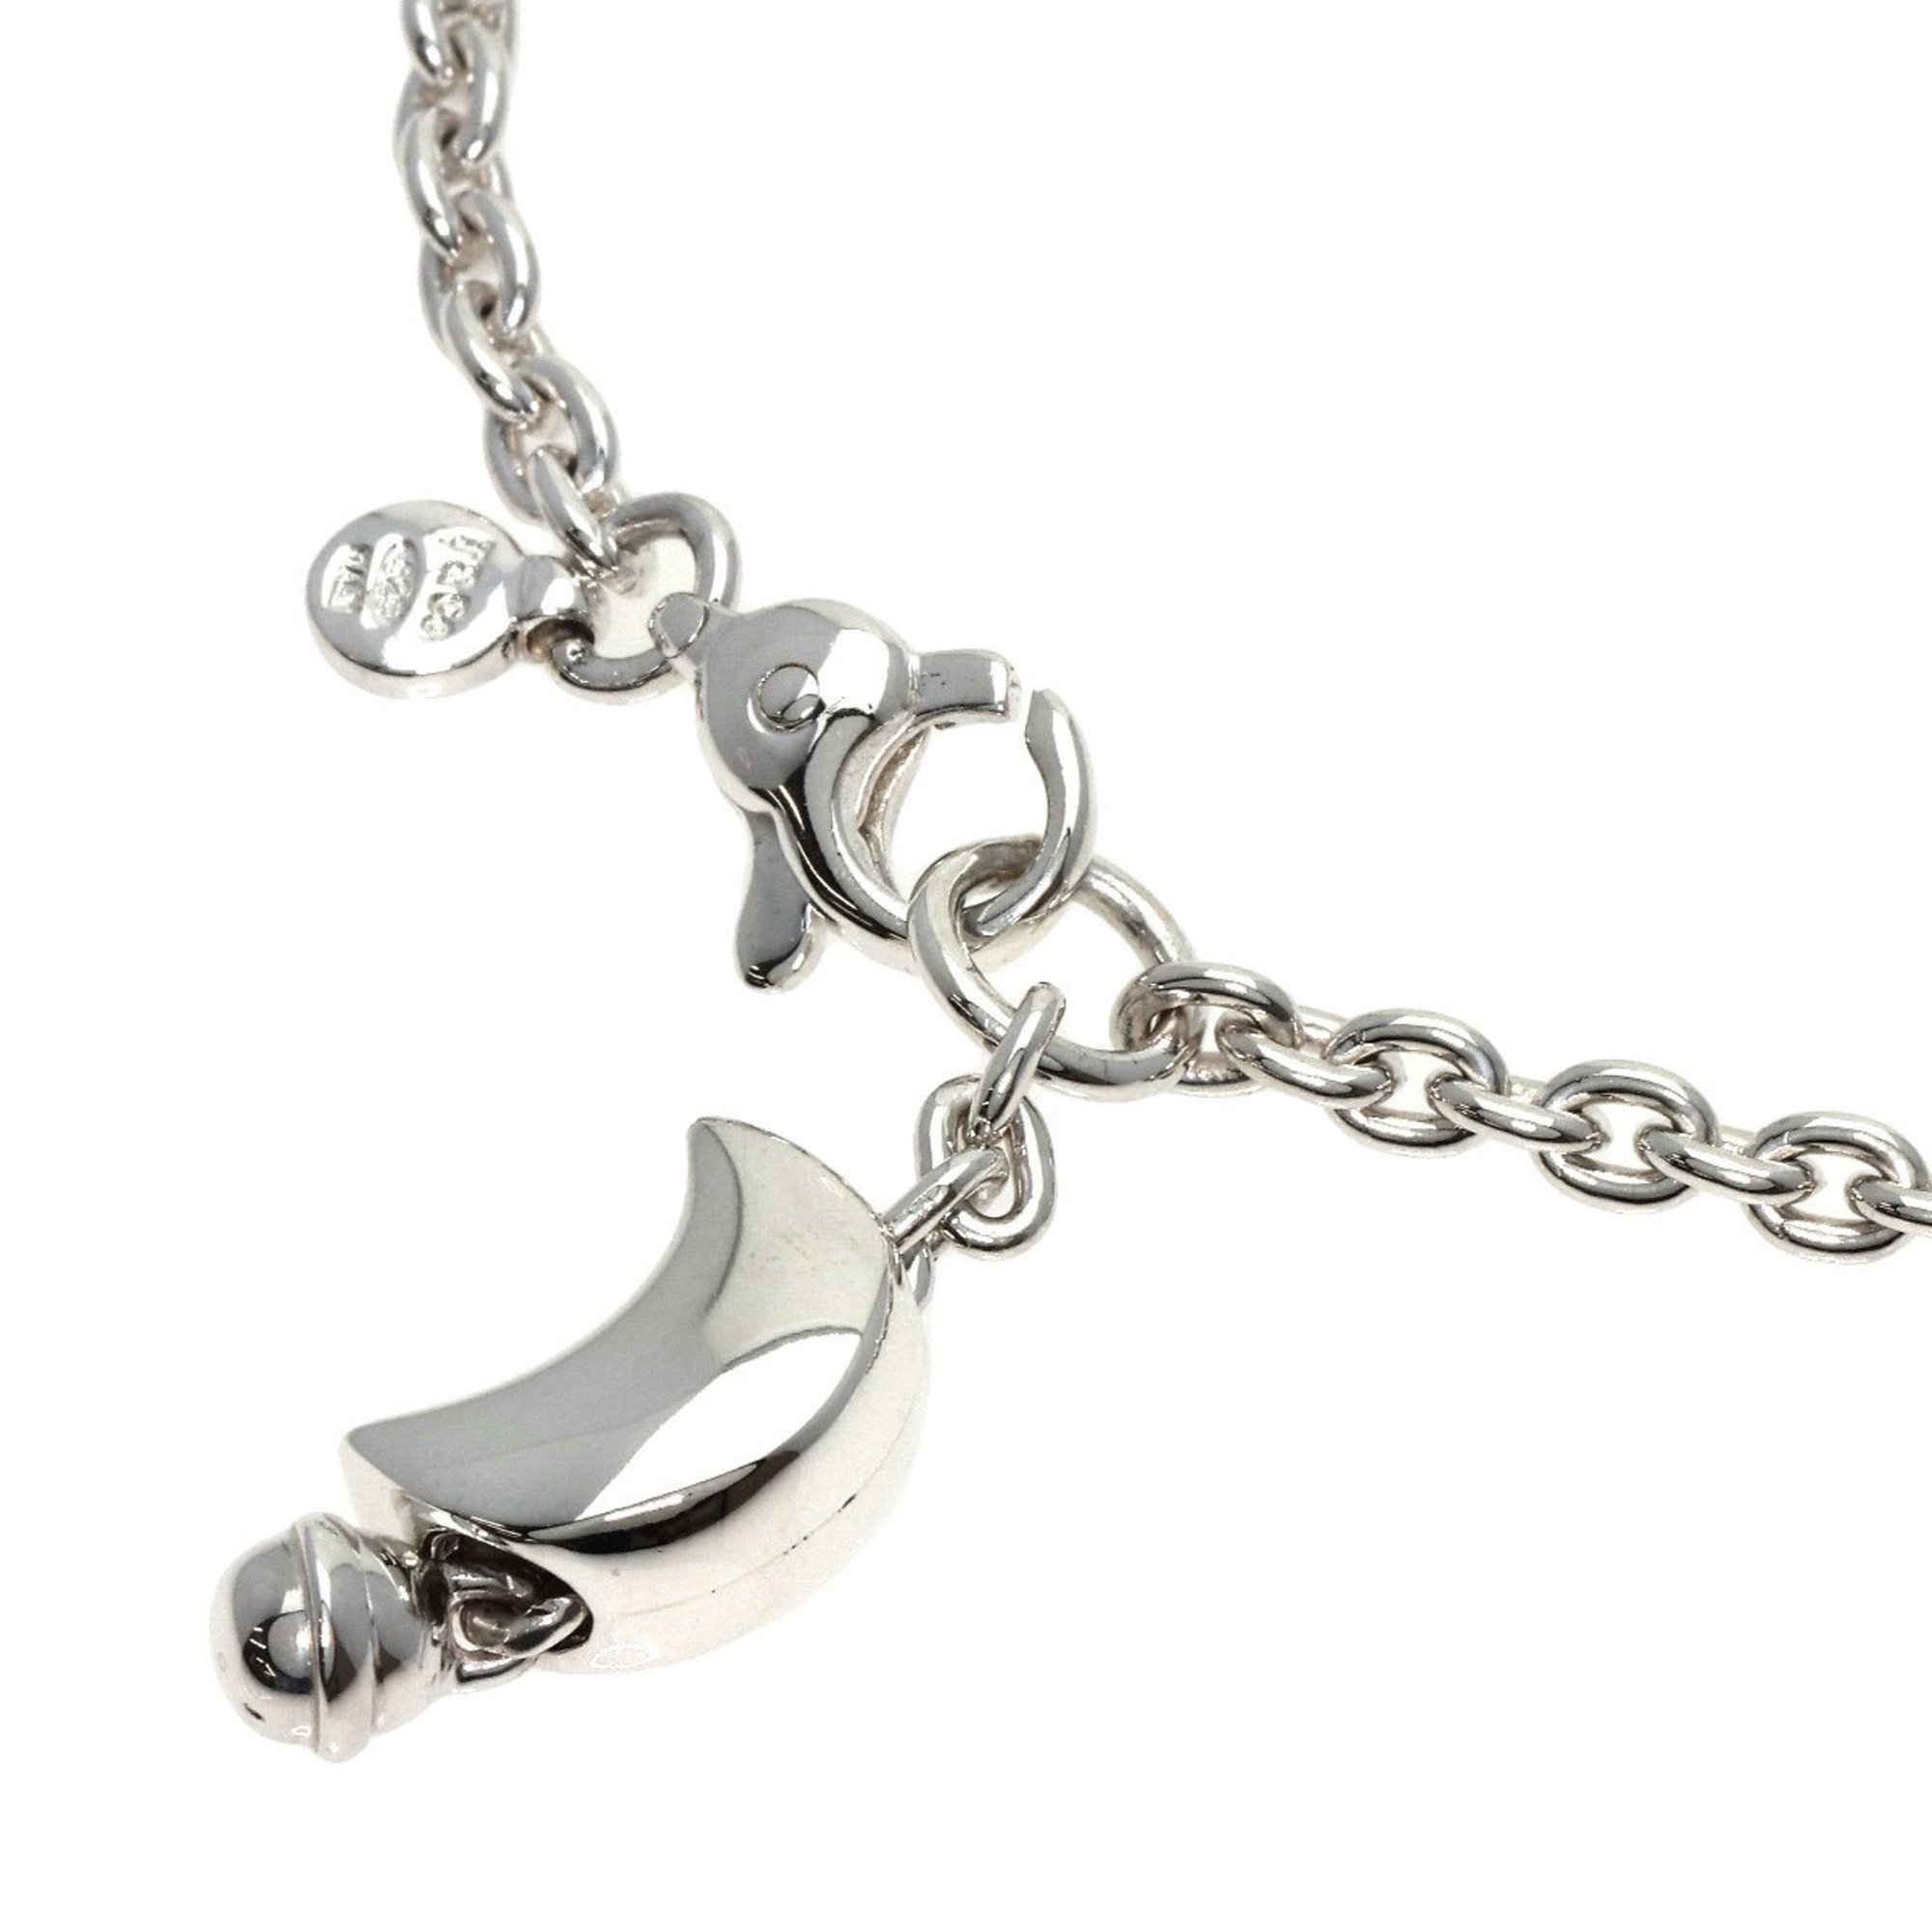 Tiffany Moon Crescent Bracelet Silver Women's